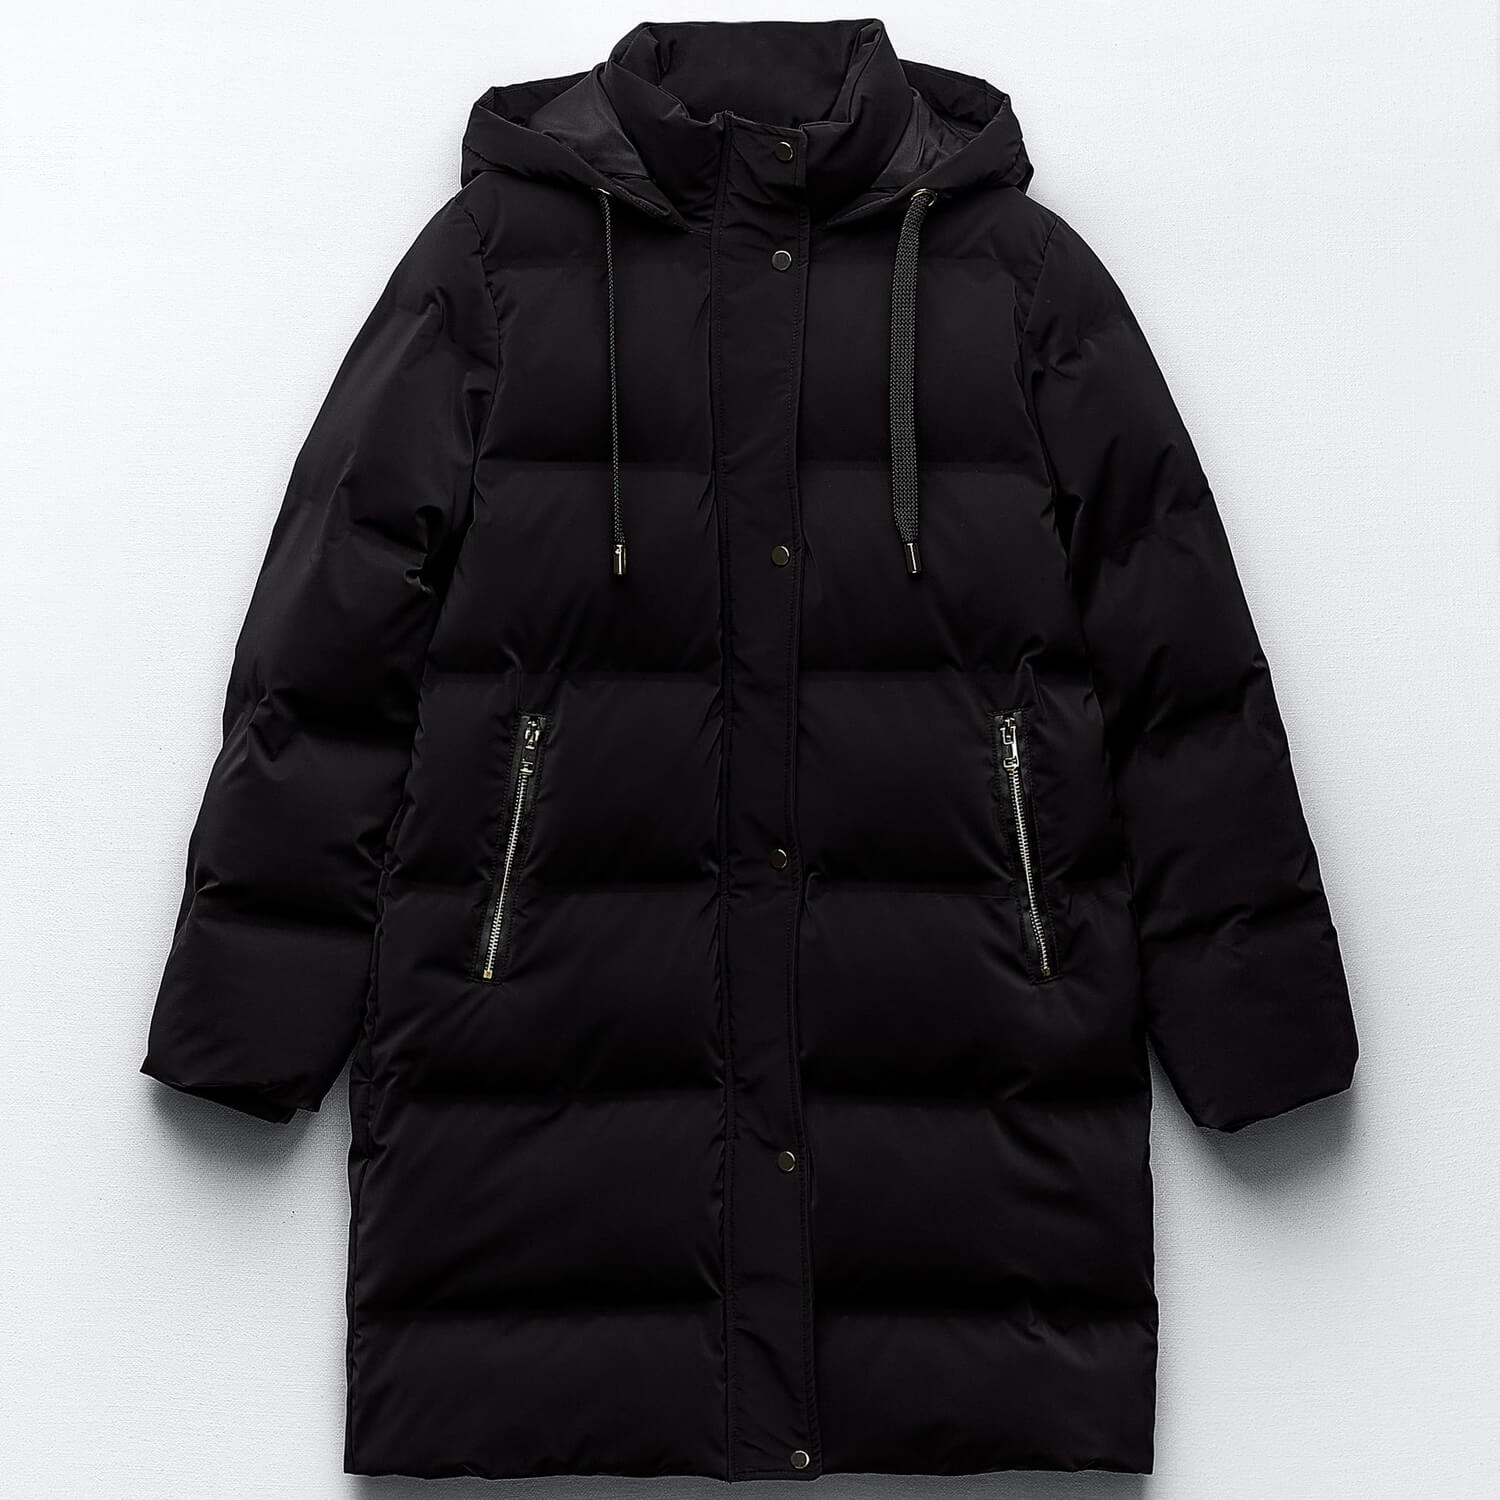 Куртка-анорак Zara Hooded With Wind Protection, черный ветровка k way демисезонная средней длины силуэт прямой манжеты регулируемый капюшон карманы стрейч размер l розовый